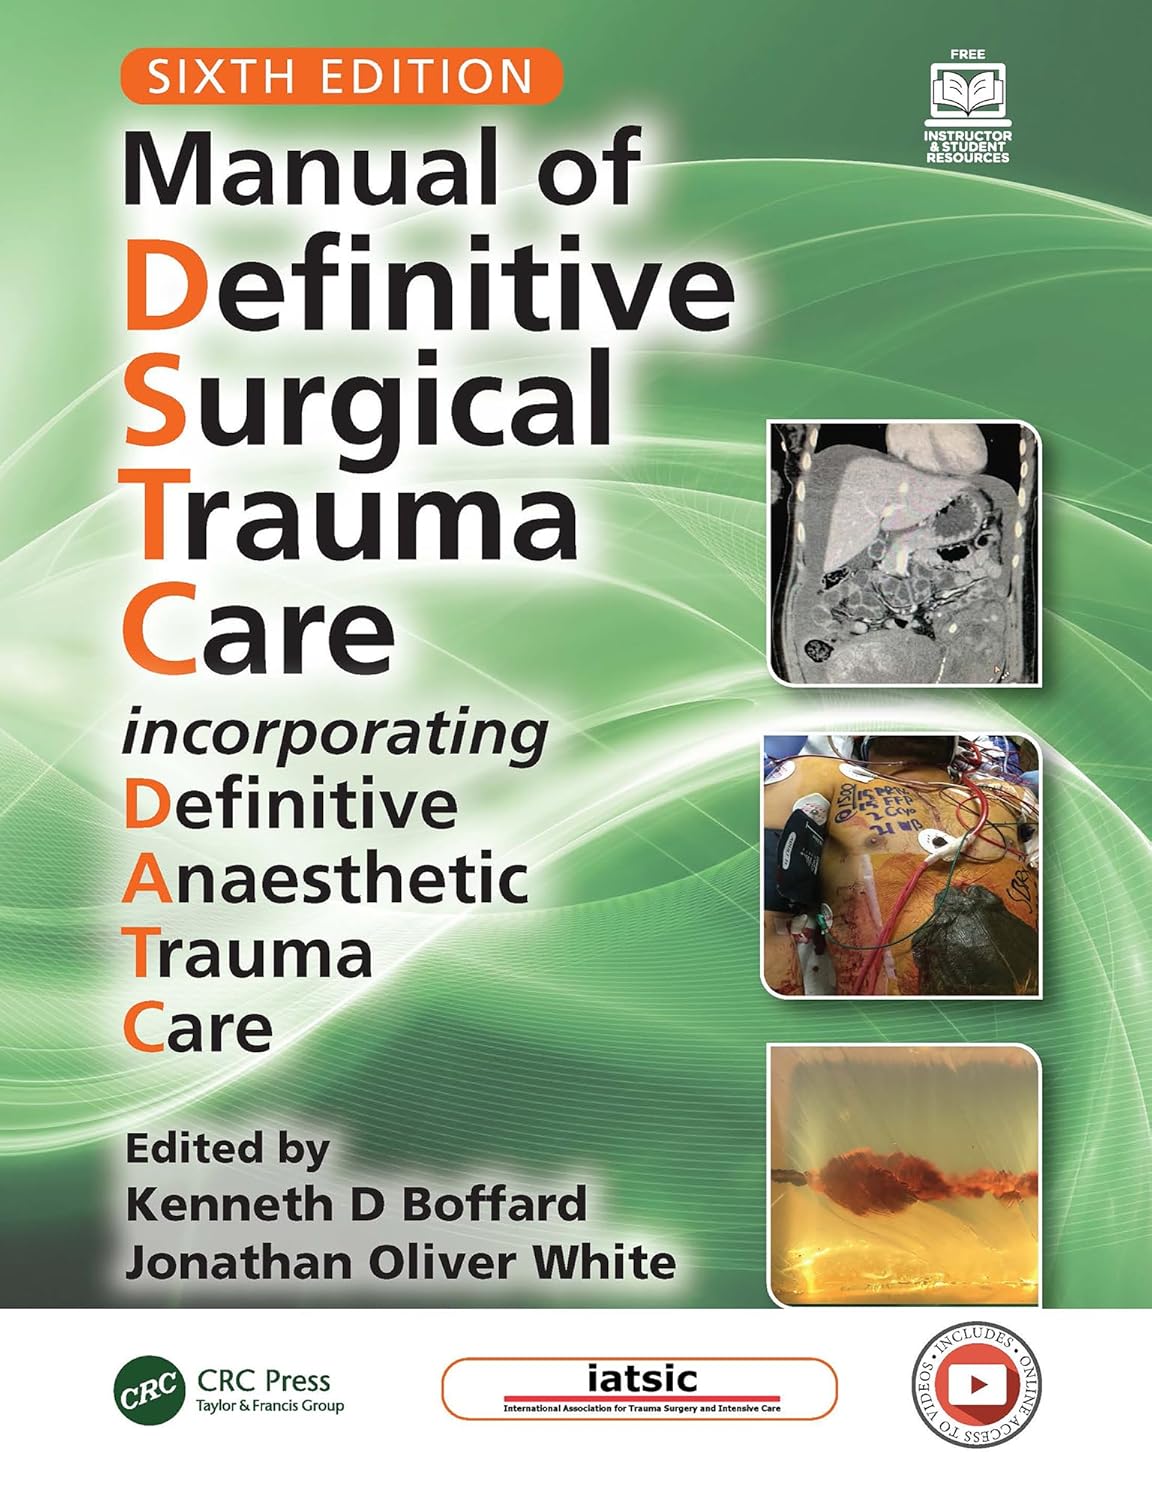 Manual of Definitive Surgical Trauma Care: Incorporating Definitive Anaesthetic Trauma Care 6th Edition